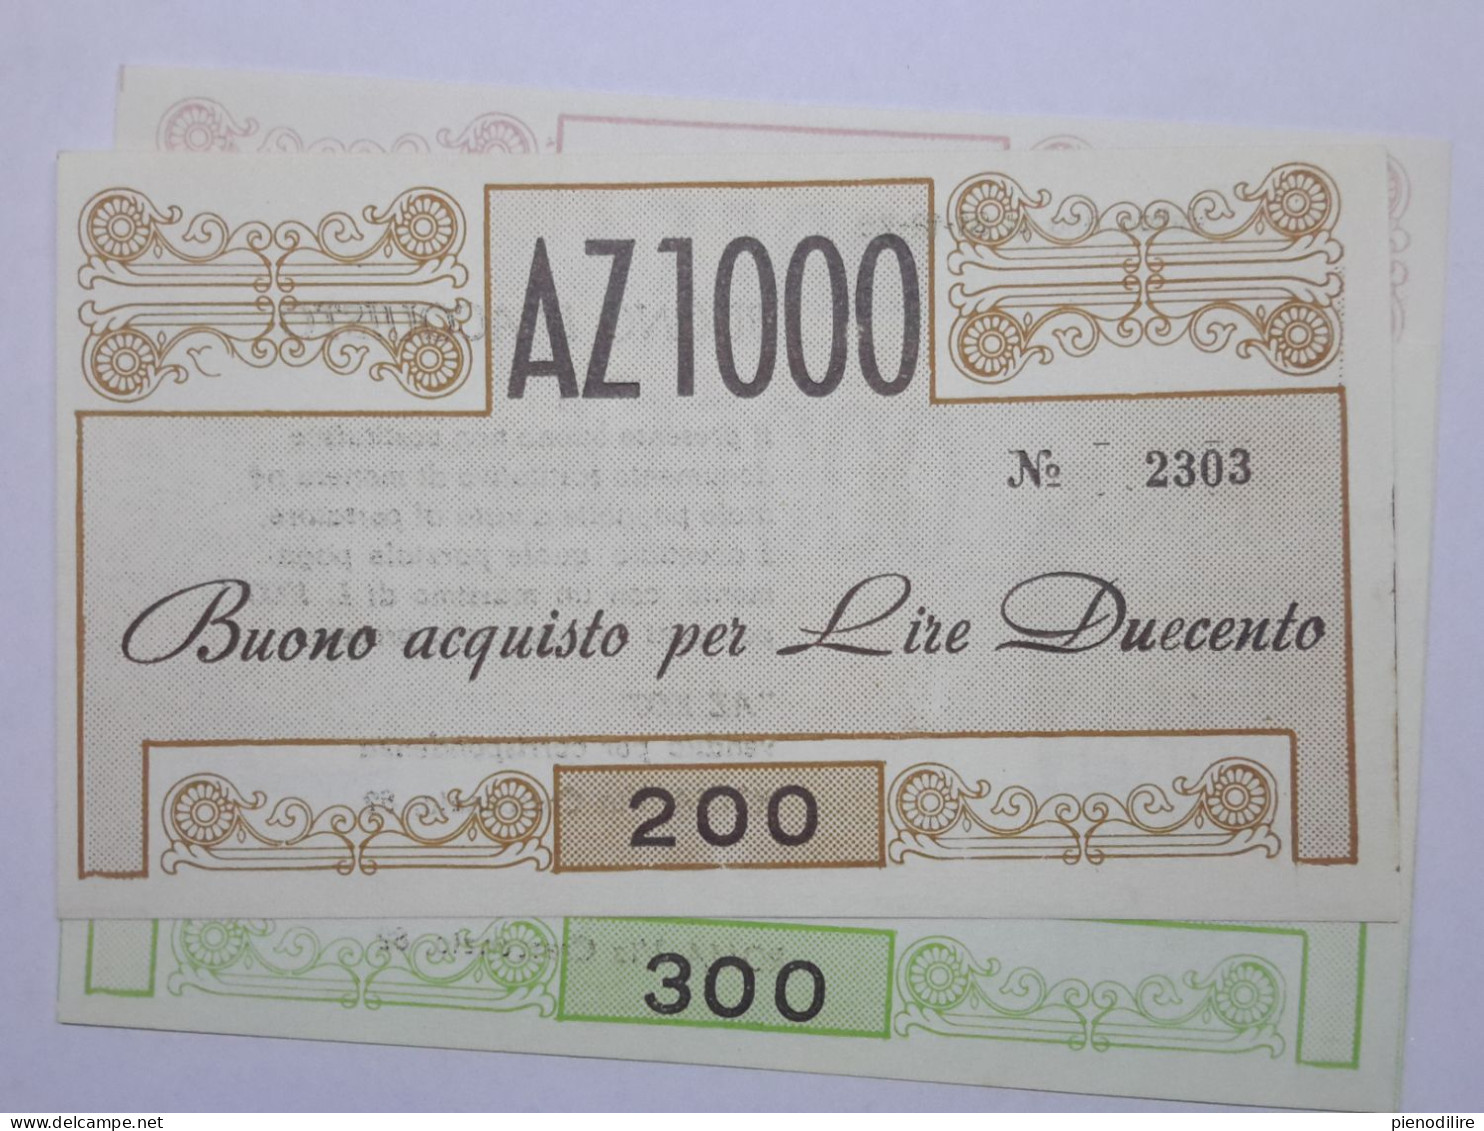 LOTTO 5Pz. 100 100 200 300 400 LIRE BUONI ACQUISTO AZ1000 VALIDO FINO AL 31.12.1976 (A.2) - [10] Cheques Y Mini-cheques